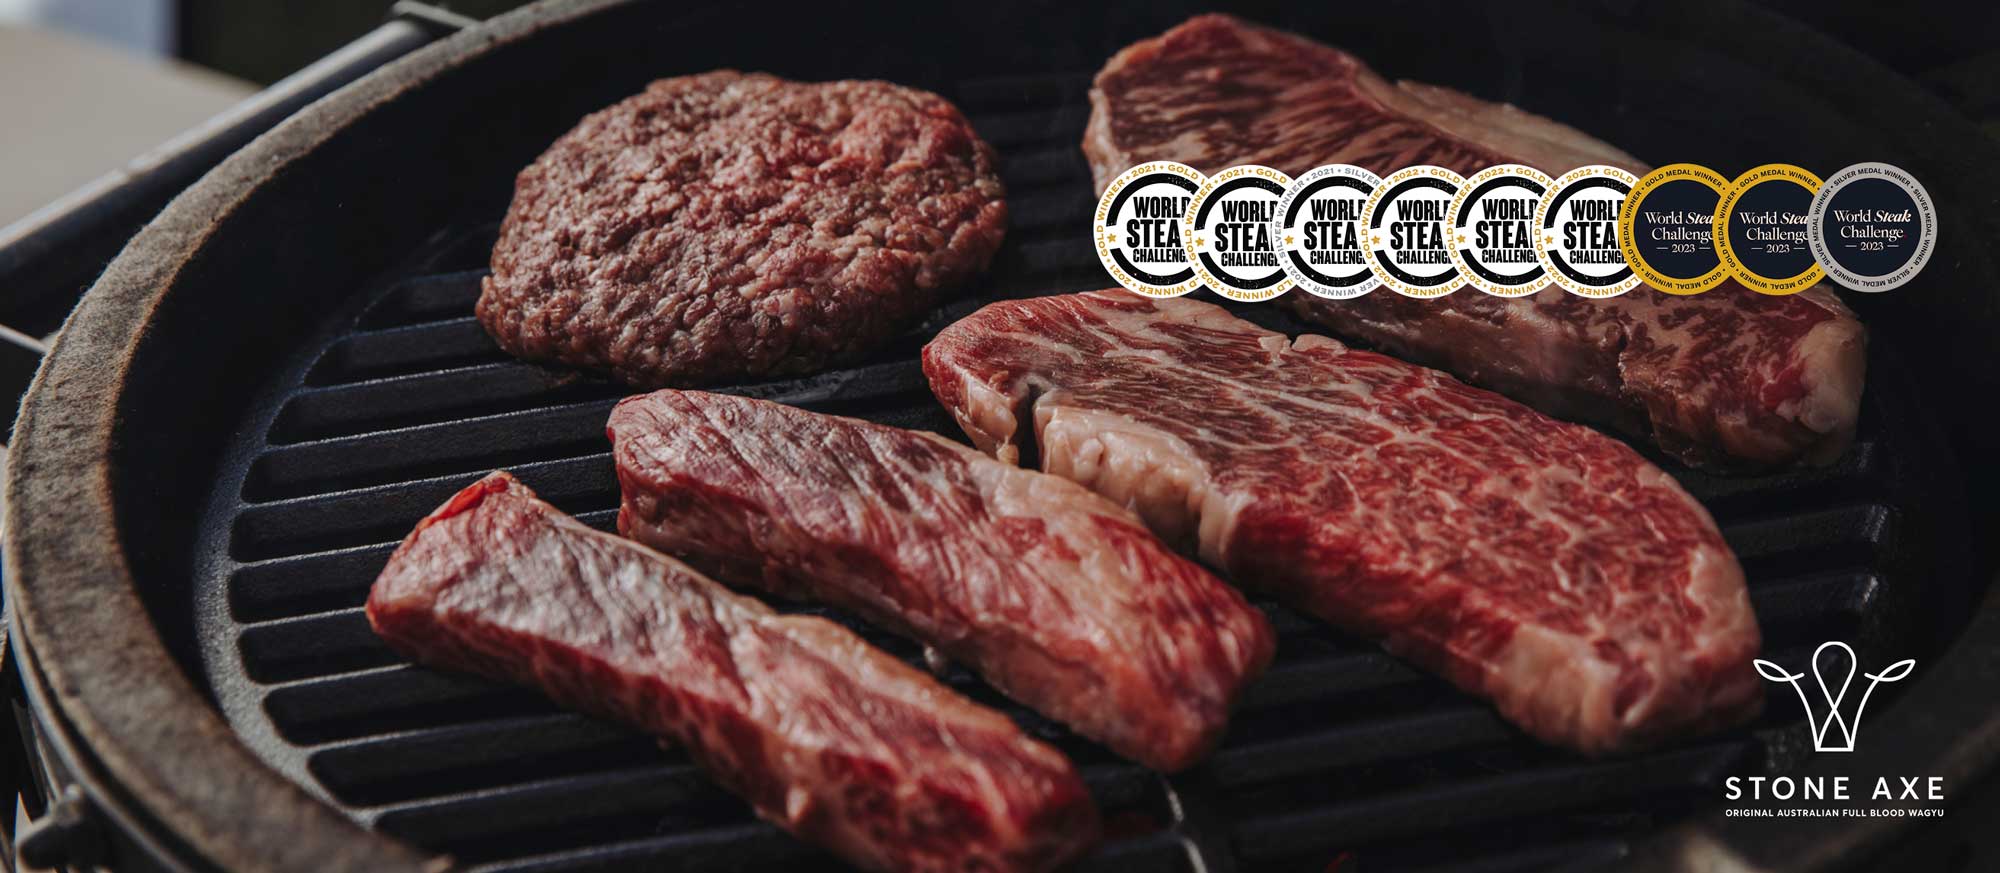 Rohe Steaks auf einem Kugelgrill mit Siegeln und Logo